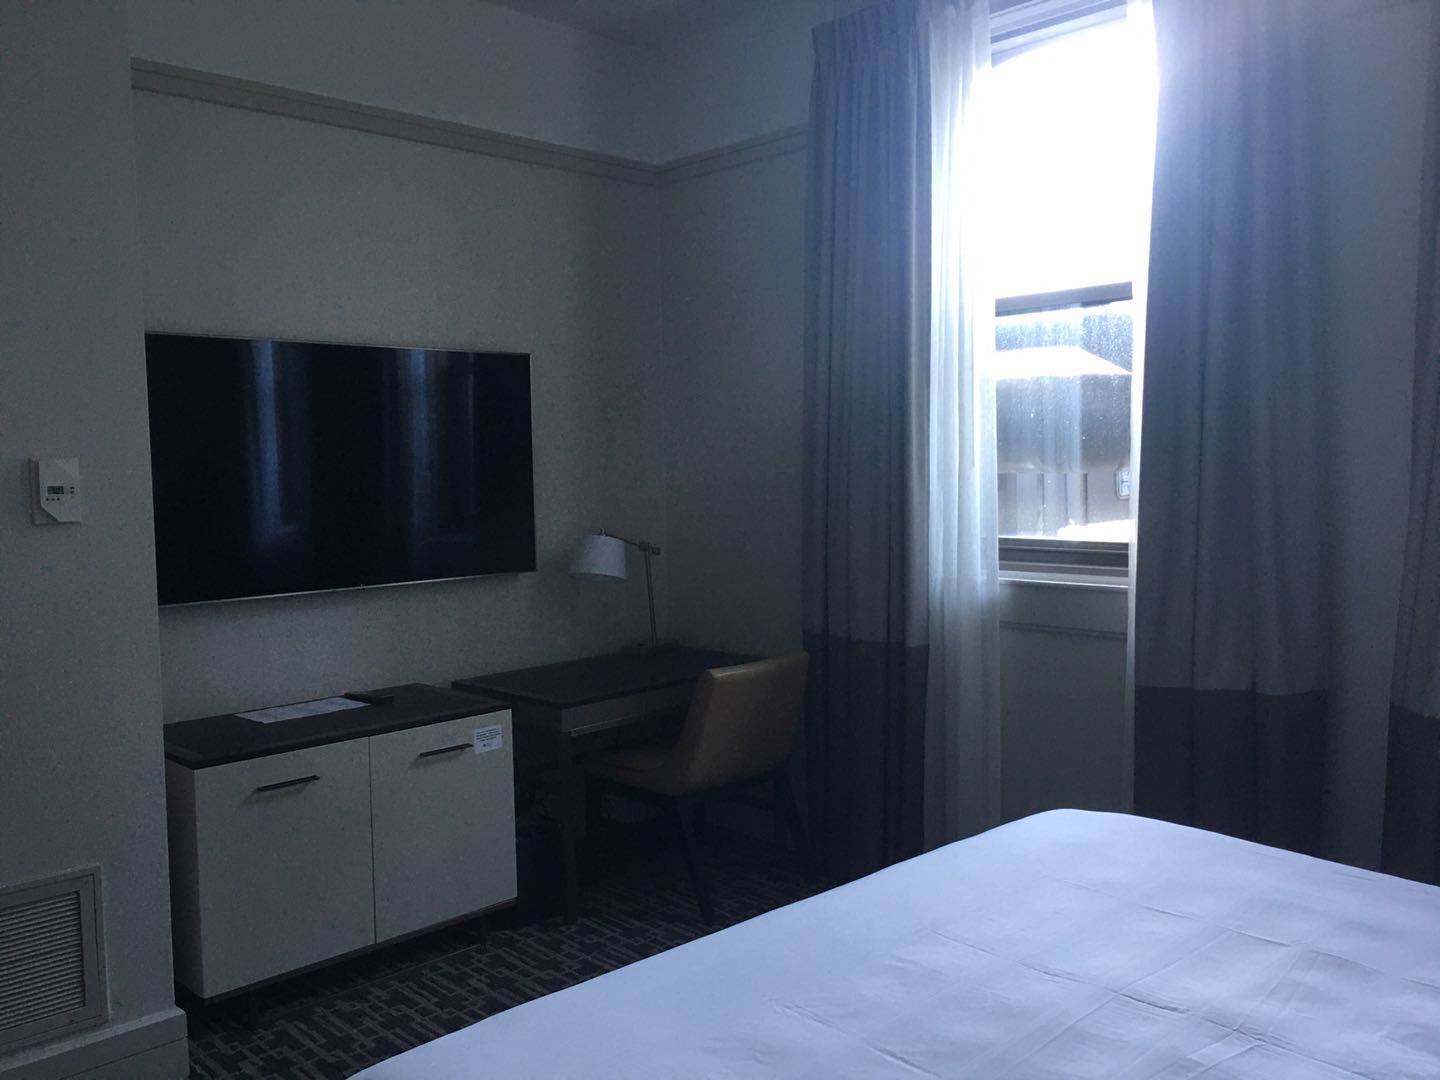 酒店位置不错。大堂华丽。但房间景色不好👎在克利夫兰市区酒店实属垫底。前台和其他家相比